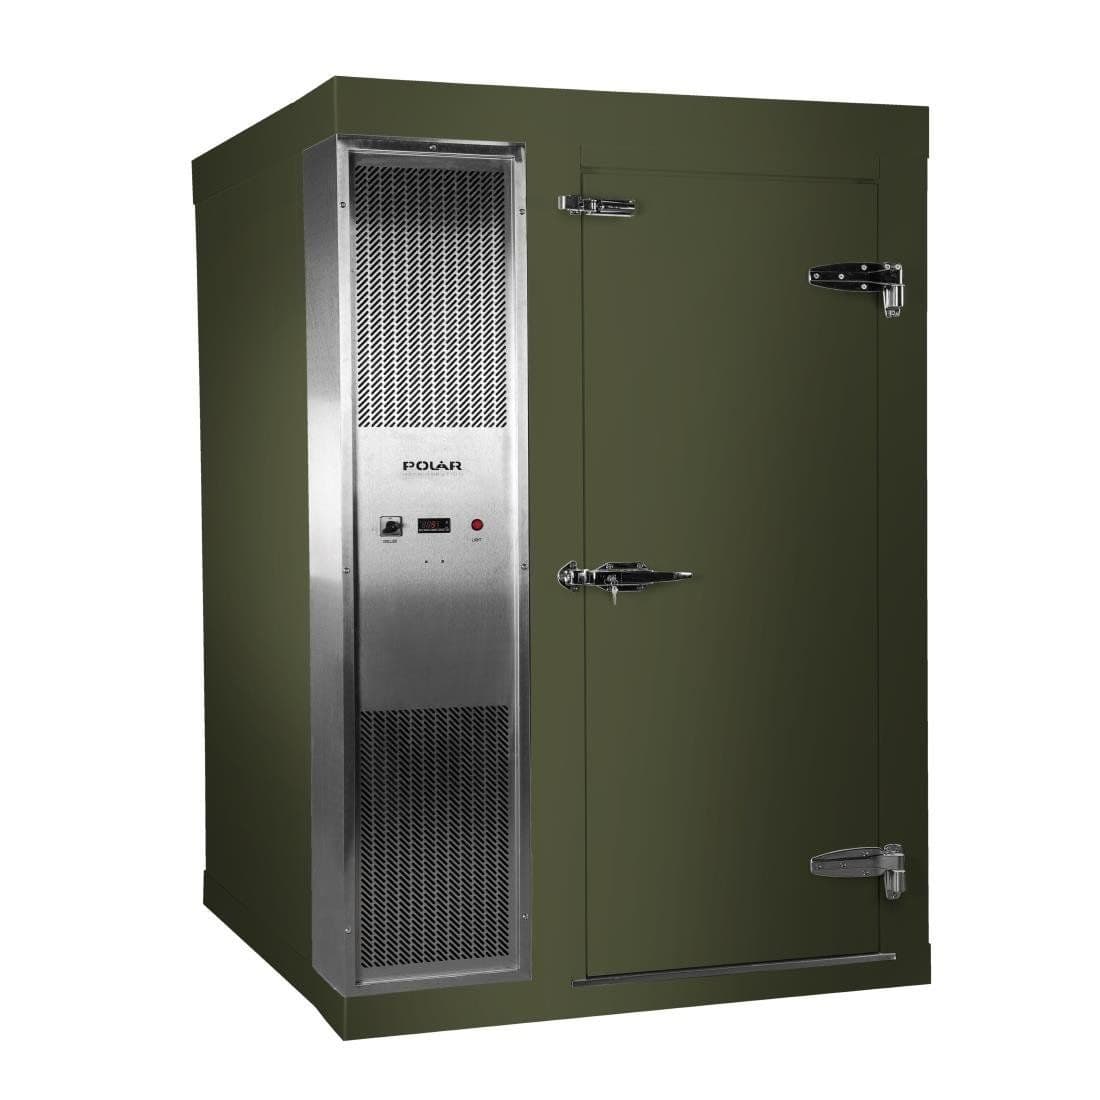 DS487-FGN Polar U-Series 2.1 x 1.5m Integral Walk In Freezer Room Green JD Catering Equipment Solutions Ltd